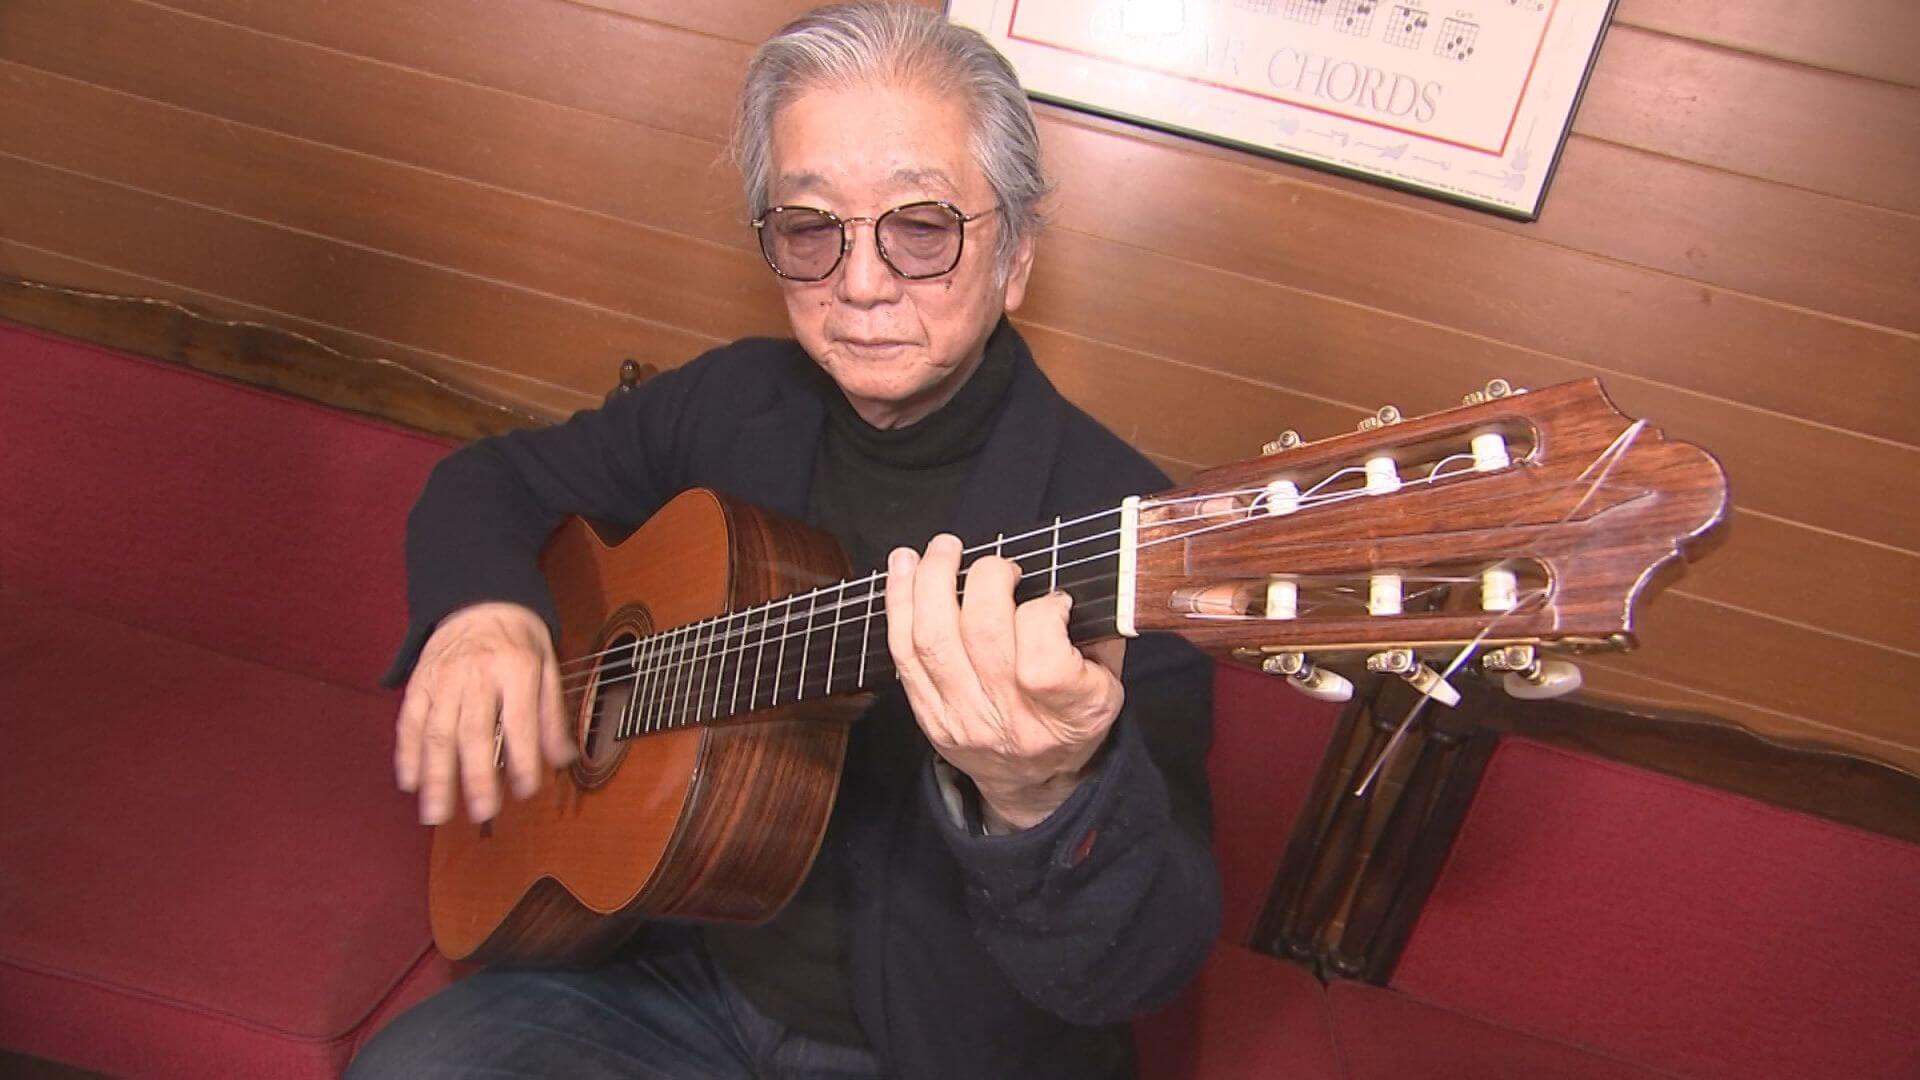 伊藤先生のギターで辰巳さん　津軽海峡・冬景色に挑戦　
														その歌声にスタッフもノリノリ